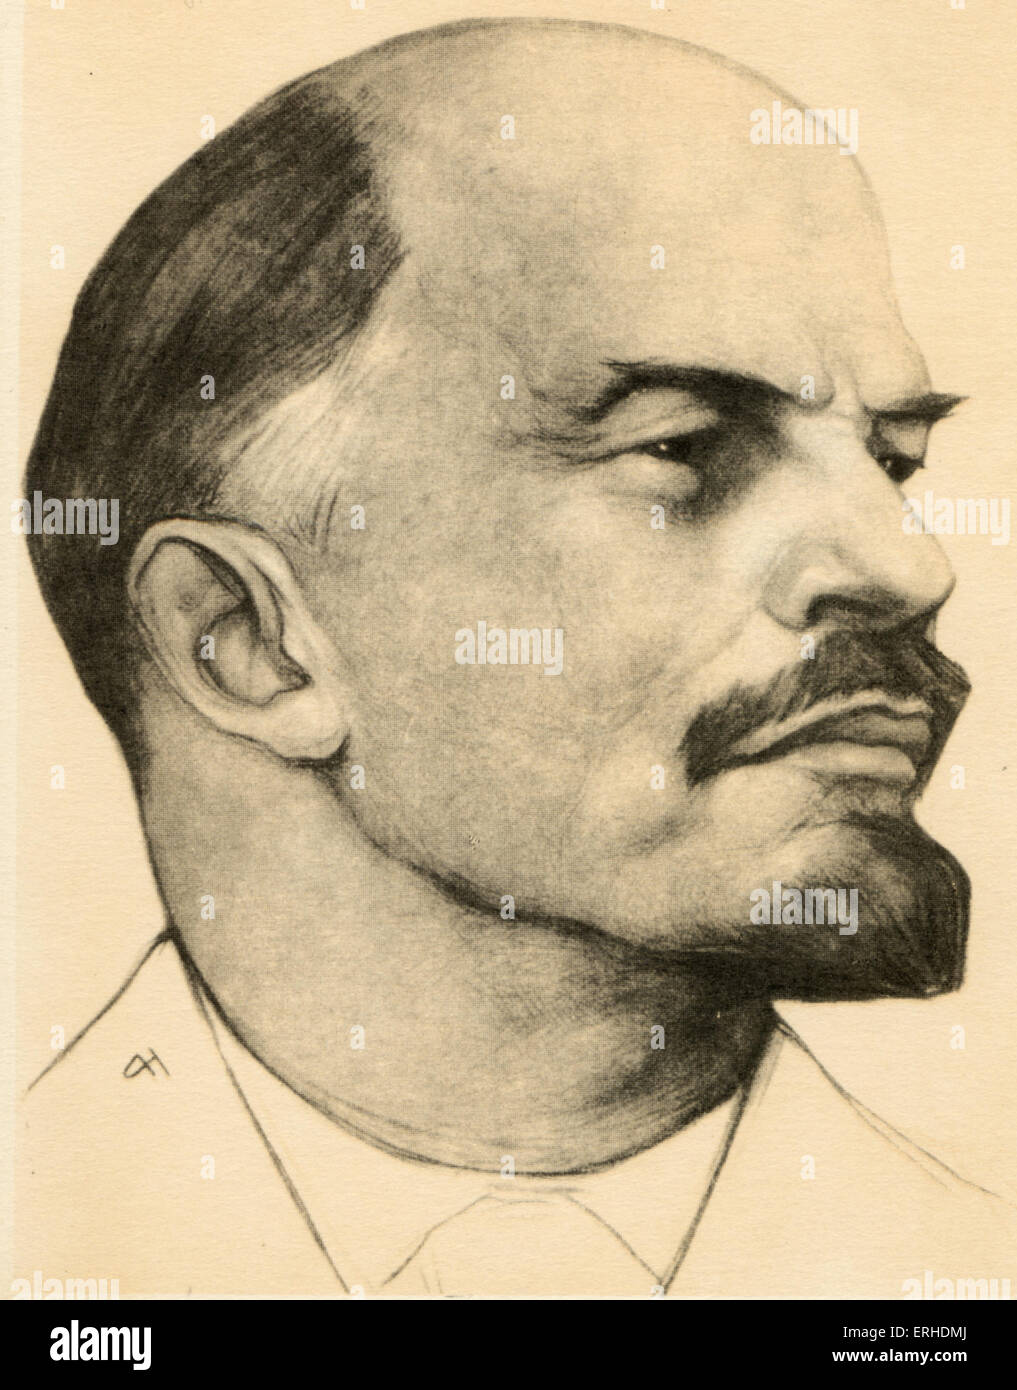 Vladimir Ilich Lenin - Porträt. Oktober Revolution, Kommunismus, Marxismus, Sowjetunion.  Vorsitzender des Rates der Volksrepublik Stockfoto